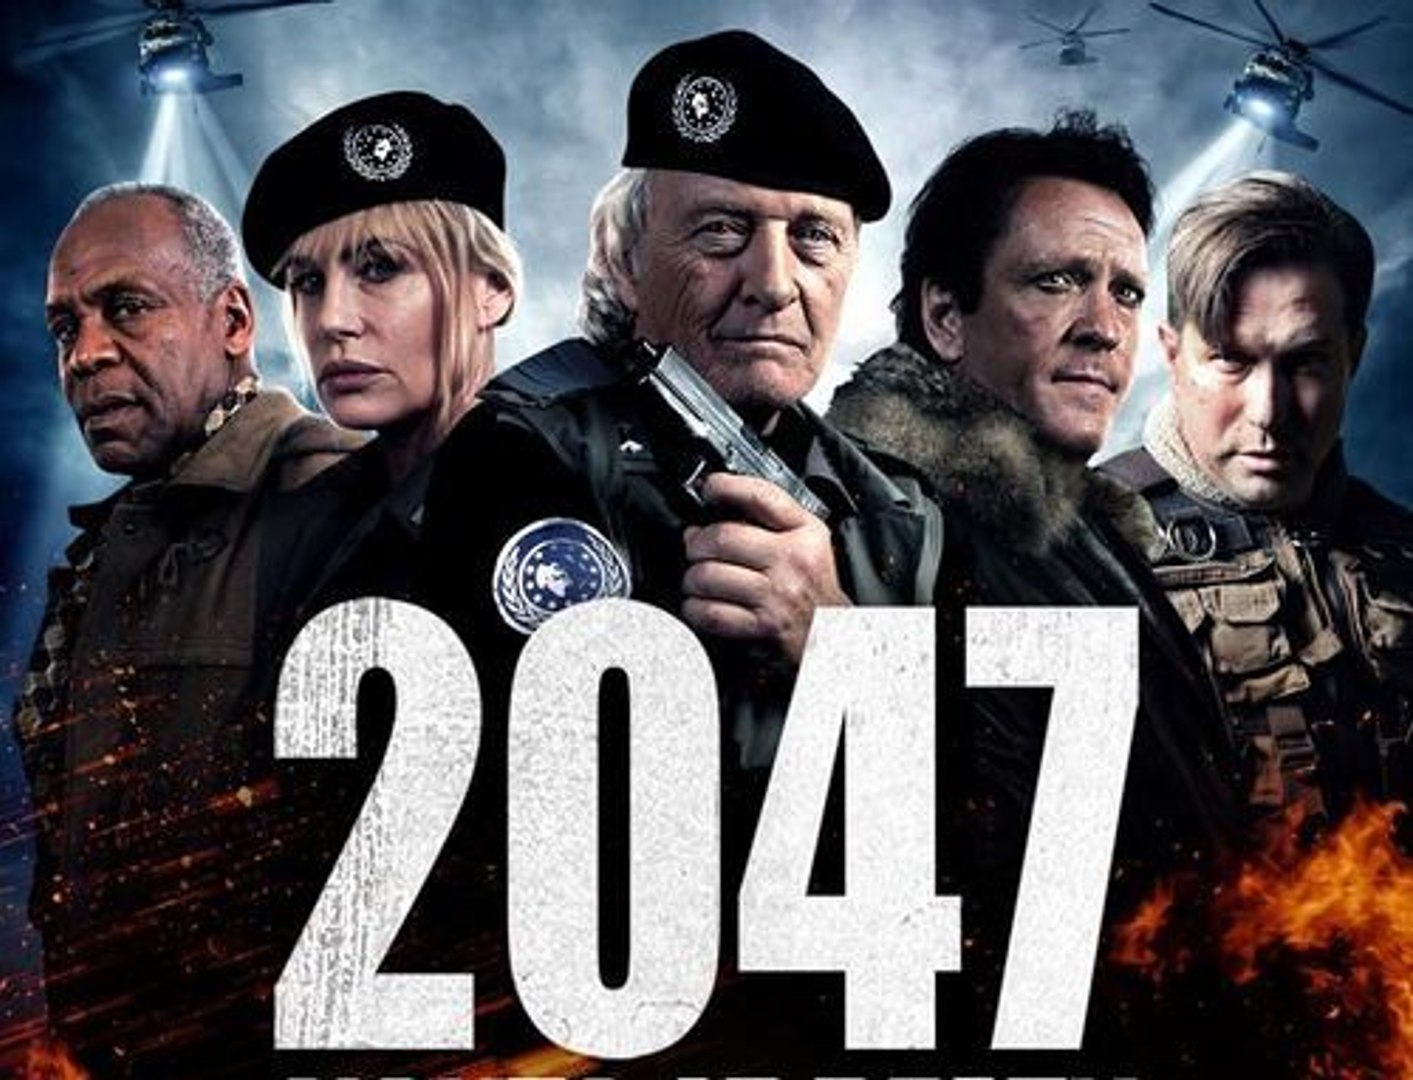 2047 Sights Of Death فيلم الاكشن والخيال العلمي مترجم الجزء